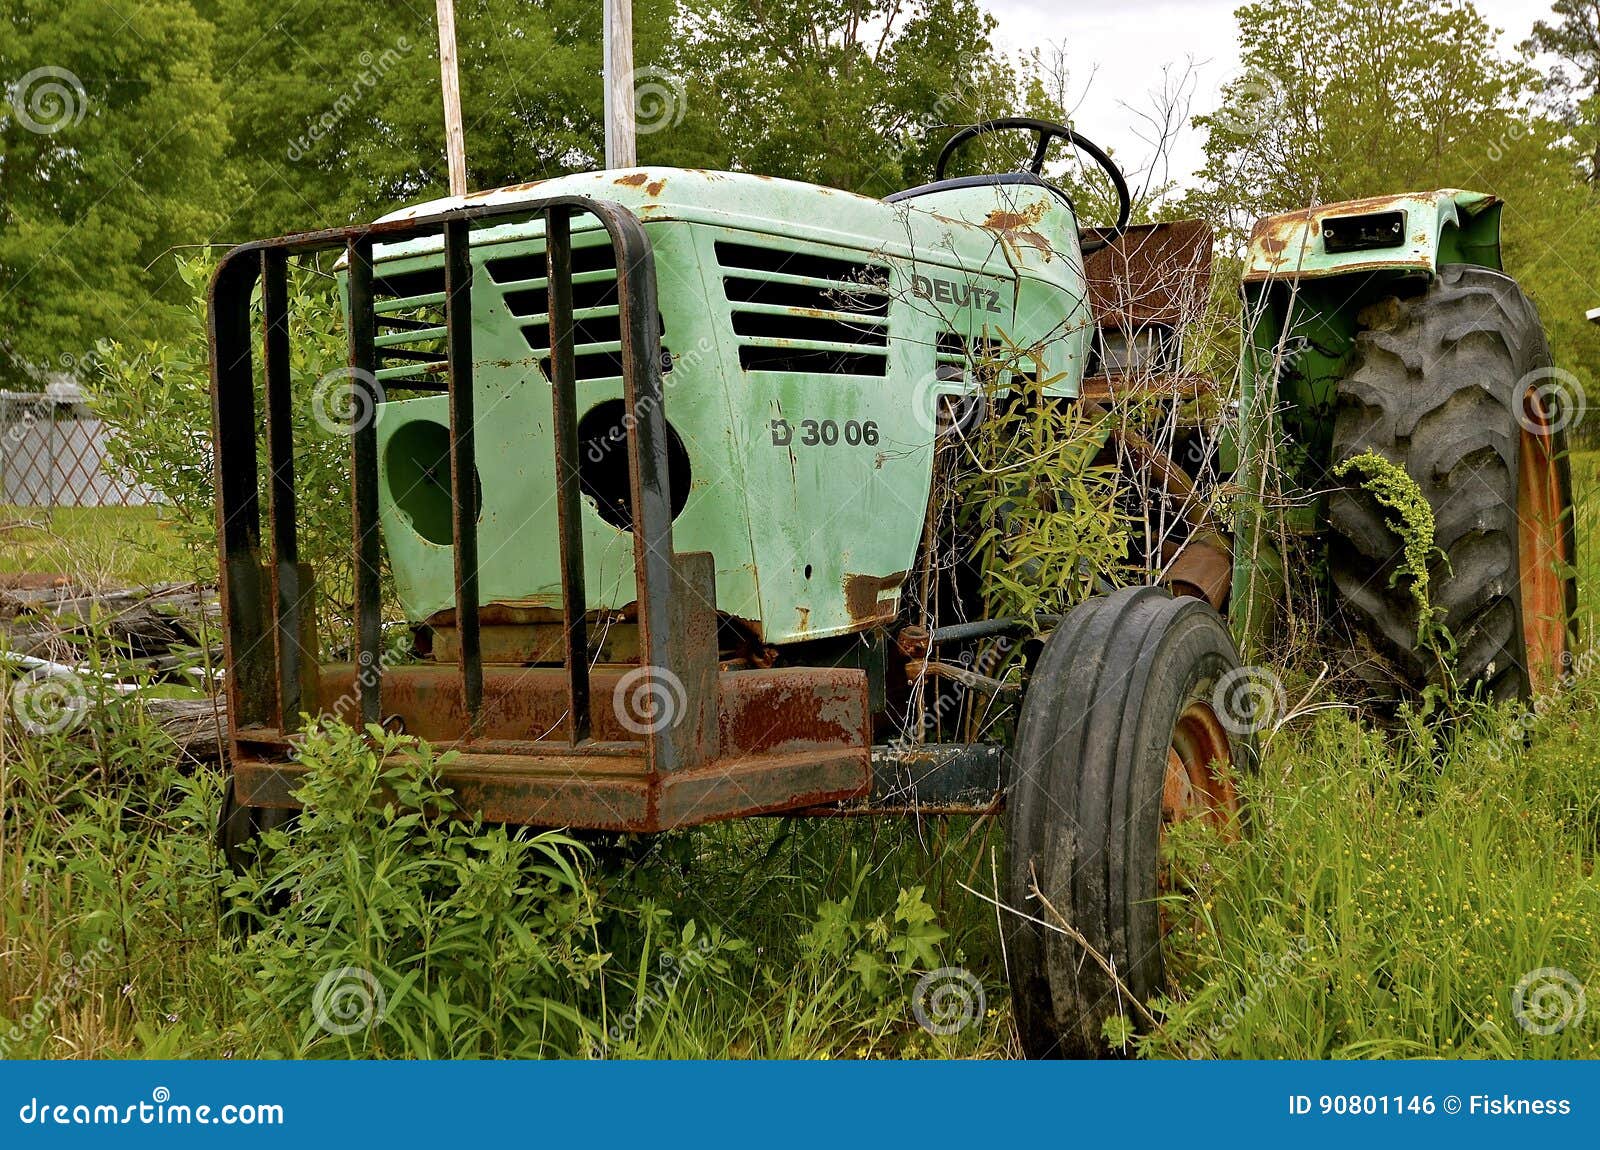 deutz 3006 tractor